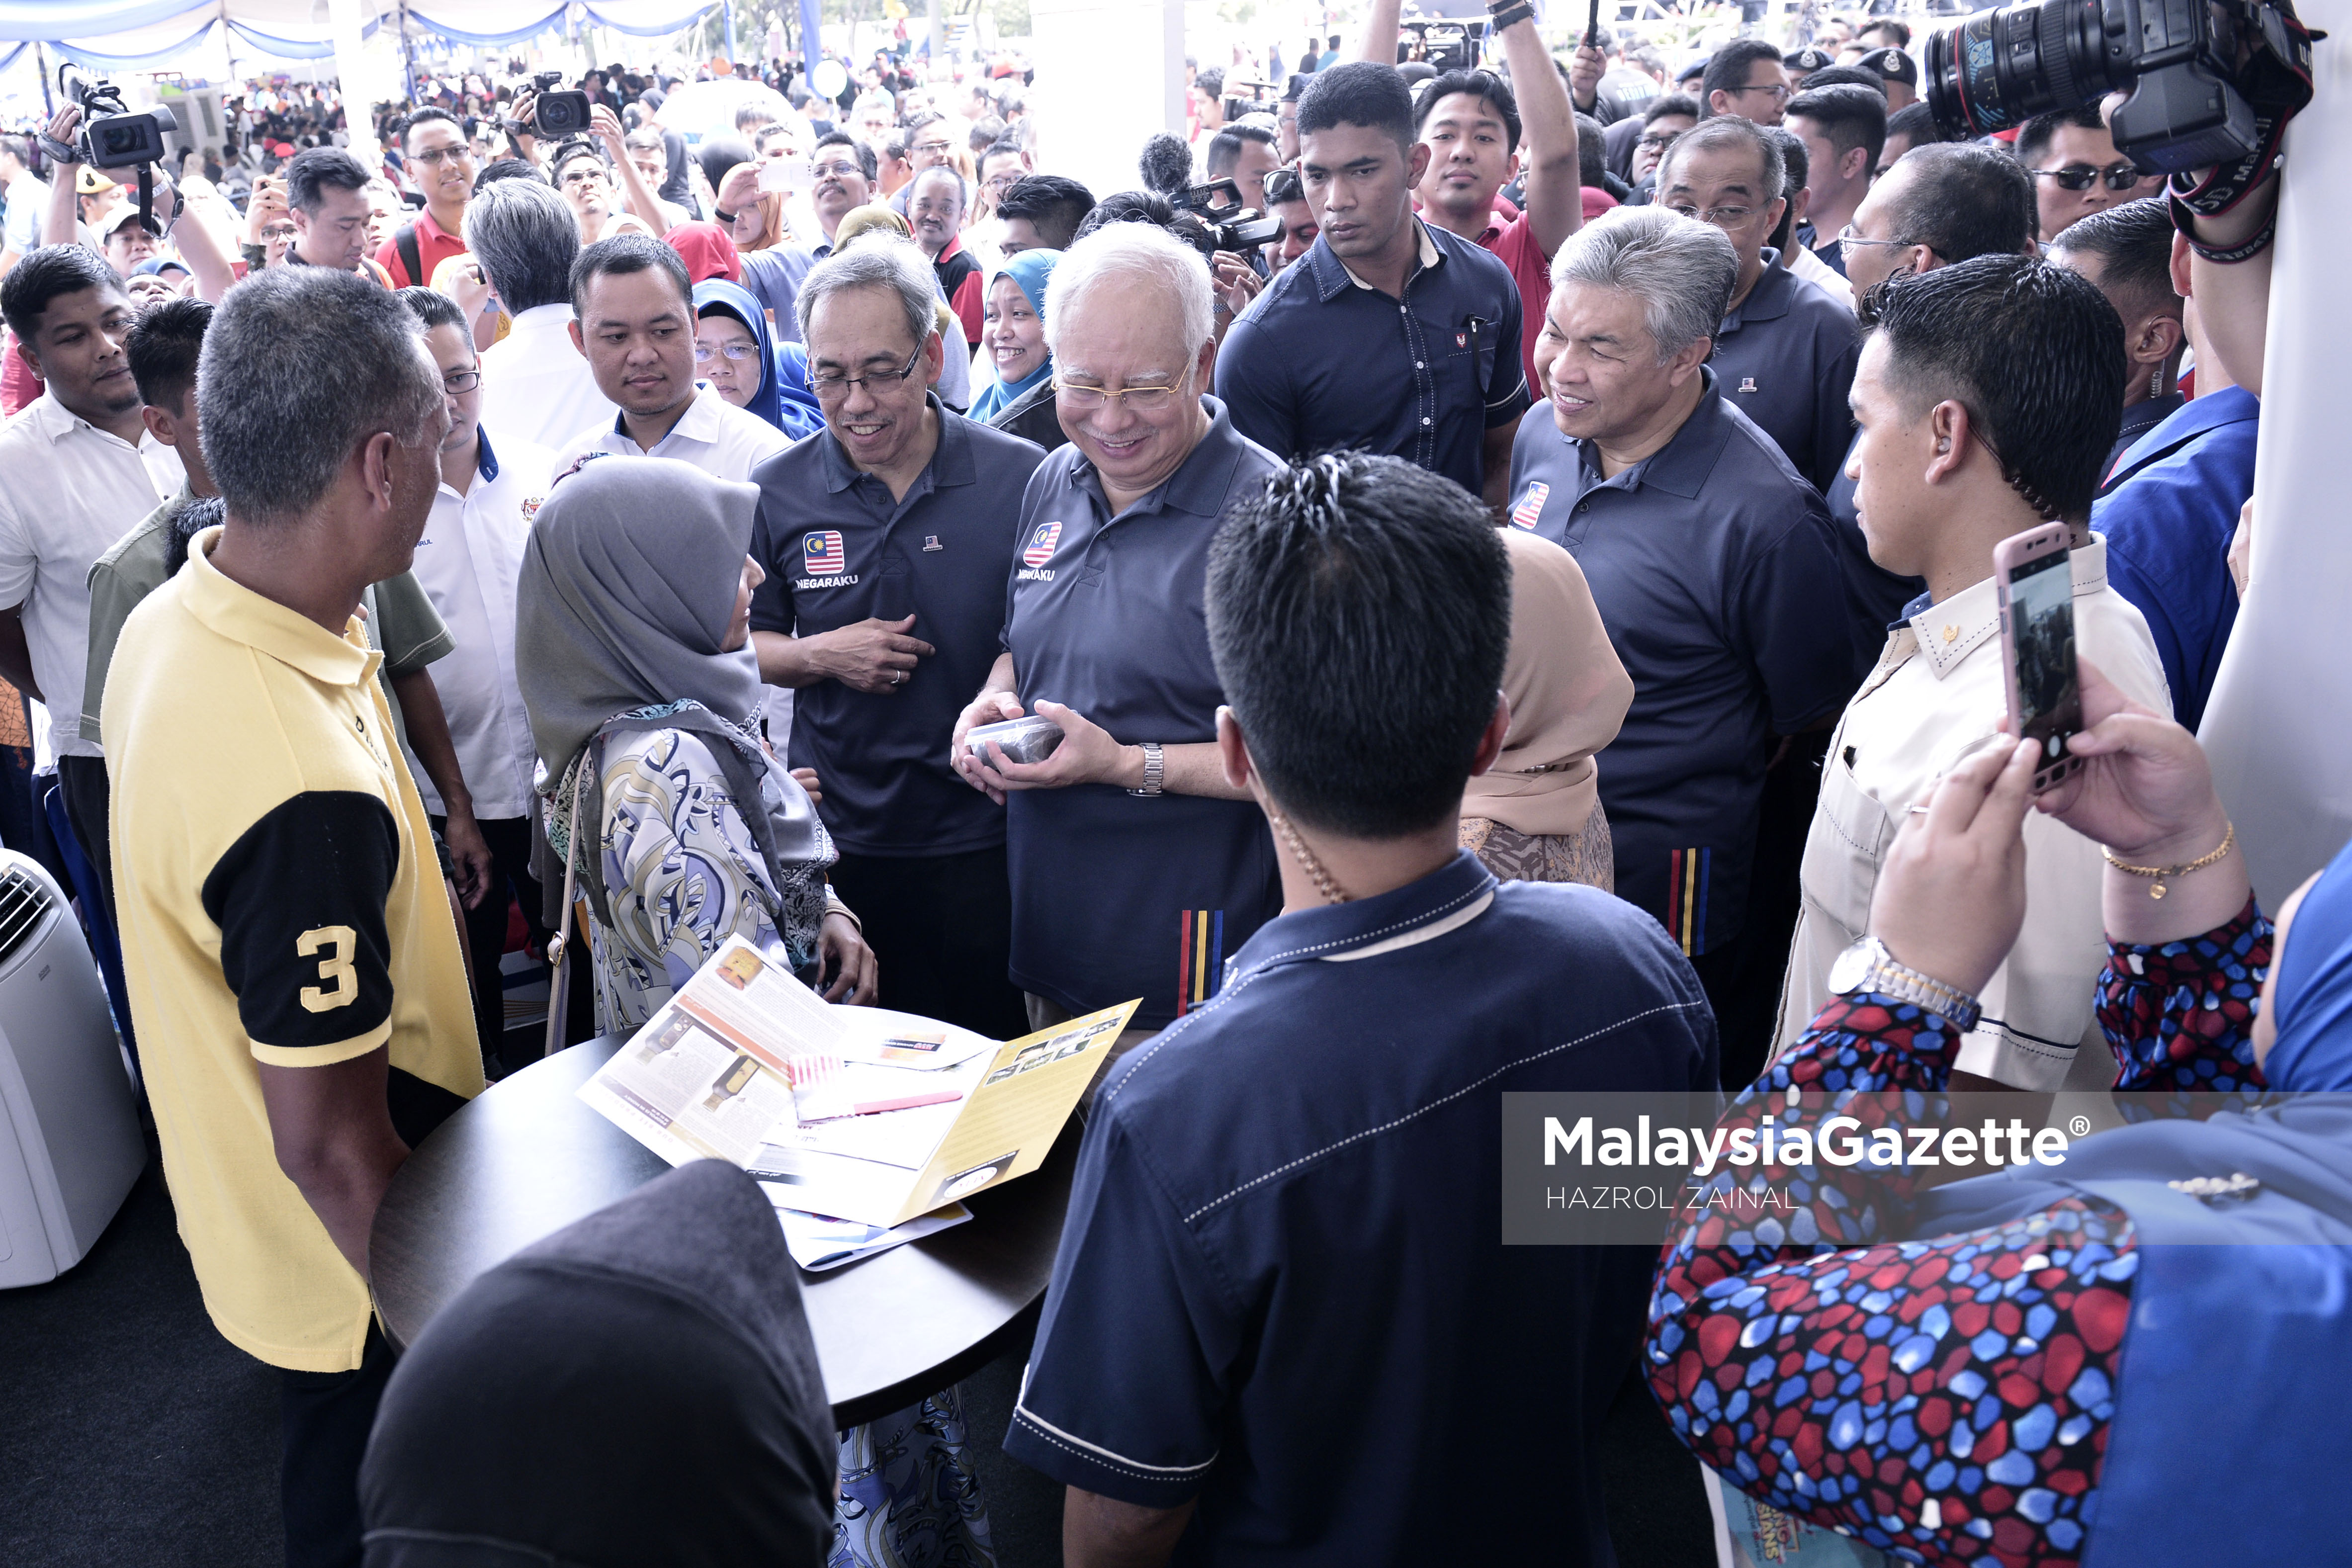 Reaksi ceria Perdana Menteri, Datuk Seri Najib Tun Razak dan Timbalan Perdana Menteri, Datuk Seri Ahmad Zahid Hamidi ketika mengunjungi ruang pameran pada Majlis Pelancaran Kempen Ekspresi Negaraku di Putrajaya. foto MOHD HAZROL ZAINAL, 18 MAC 2017.